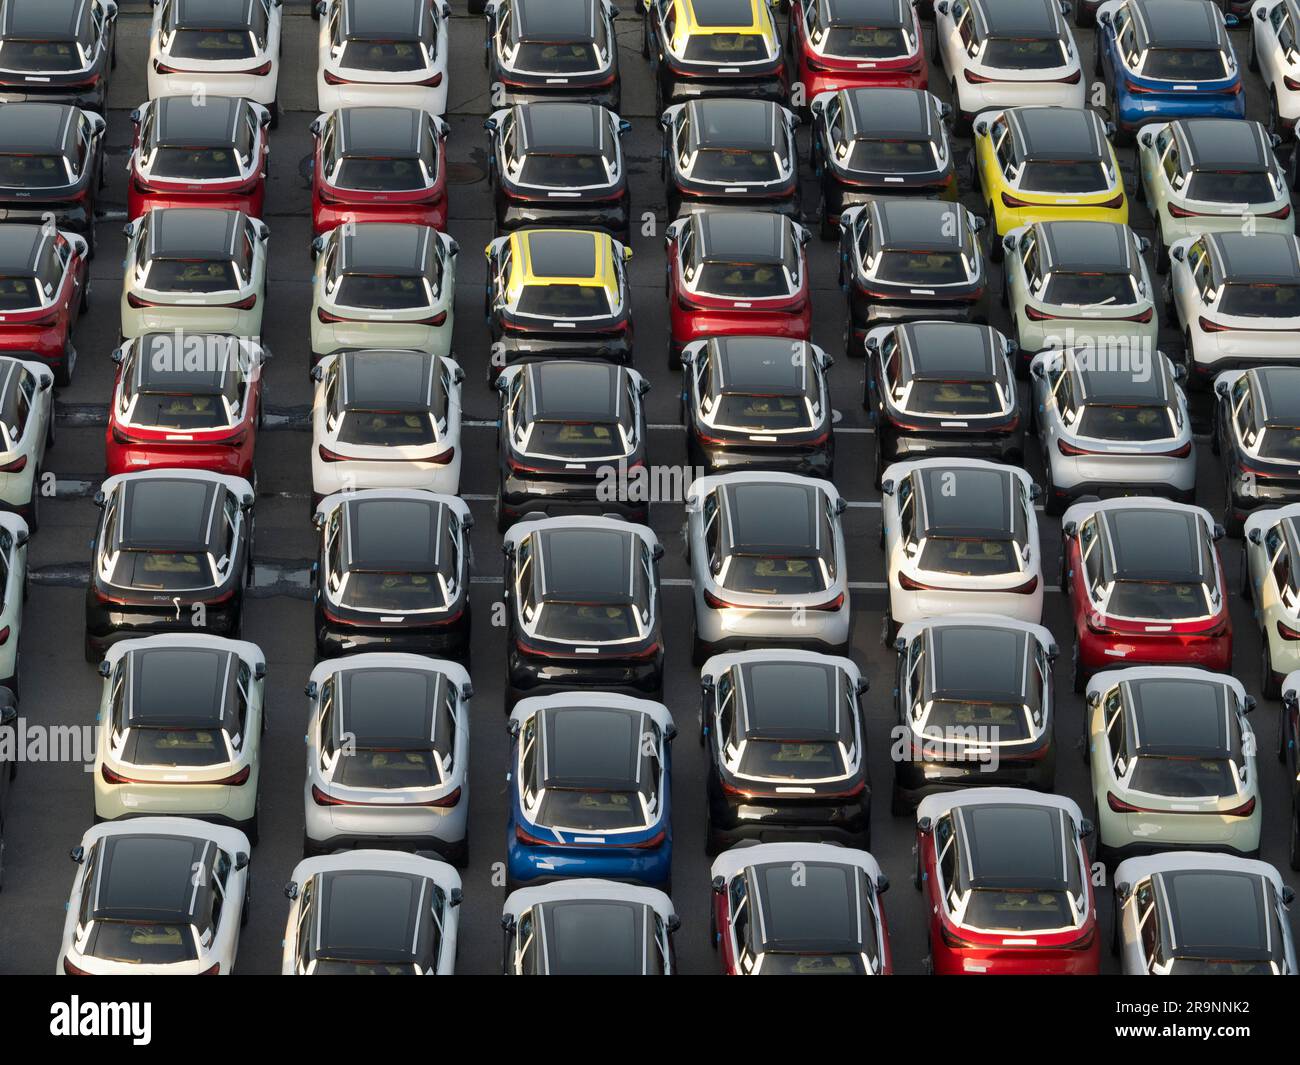 Geometria pura - file infiniti di auto importate di recente disposte a terra nel porto di Zeebrugge, in Belgio. Vista dalla piattaforma di osservazione del nostro moore Foto Stock